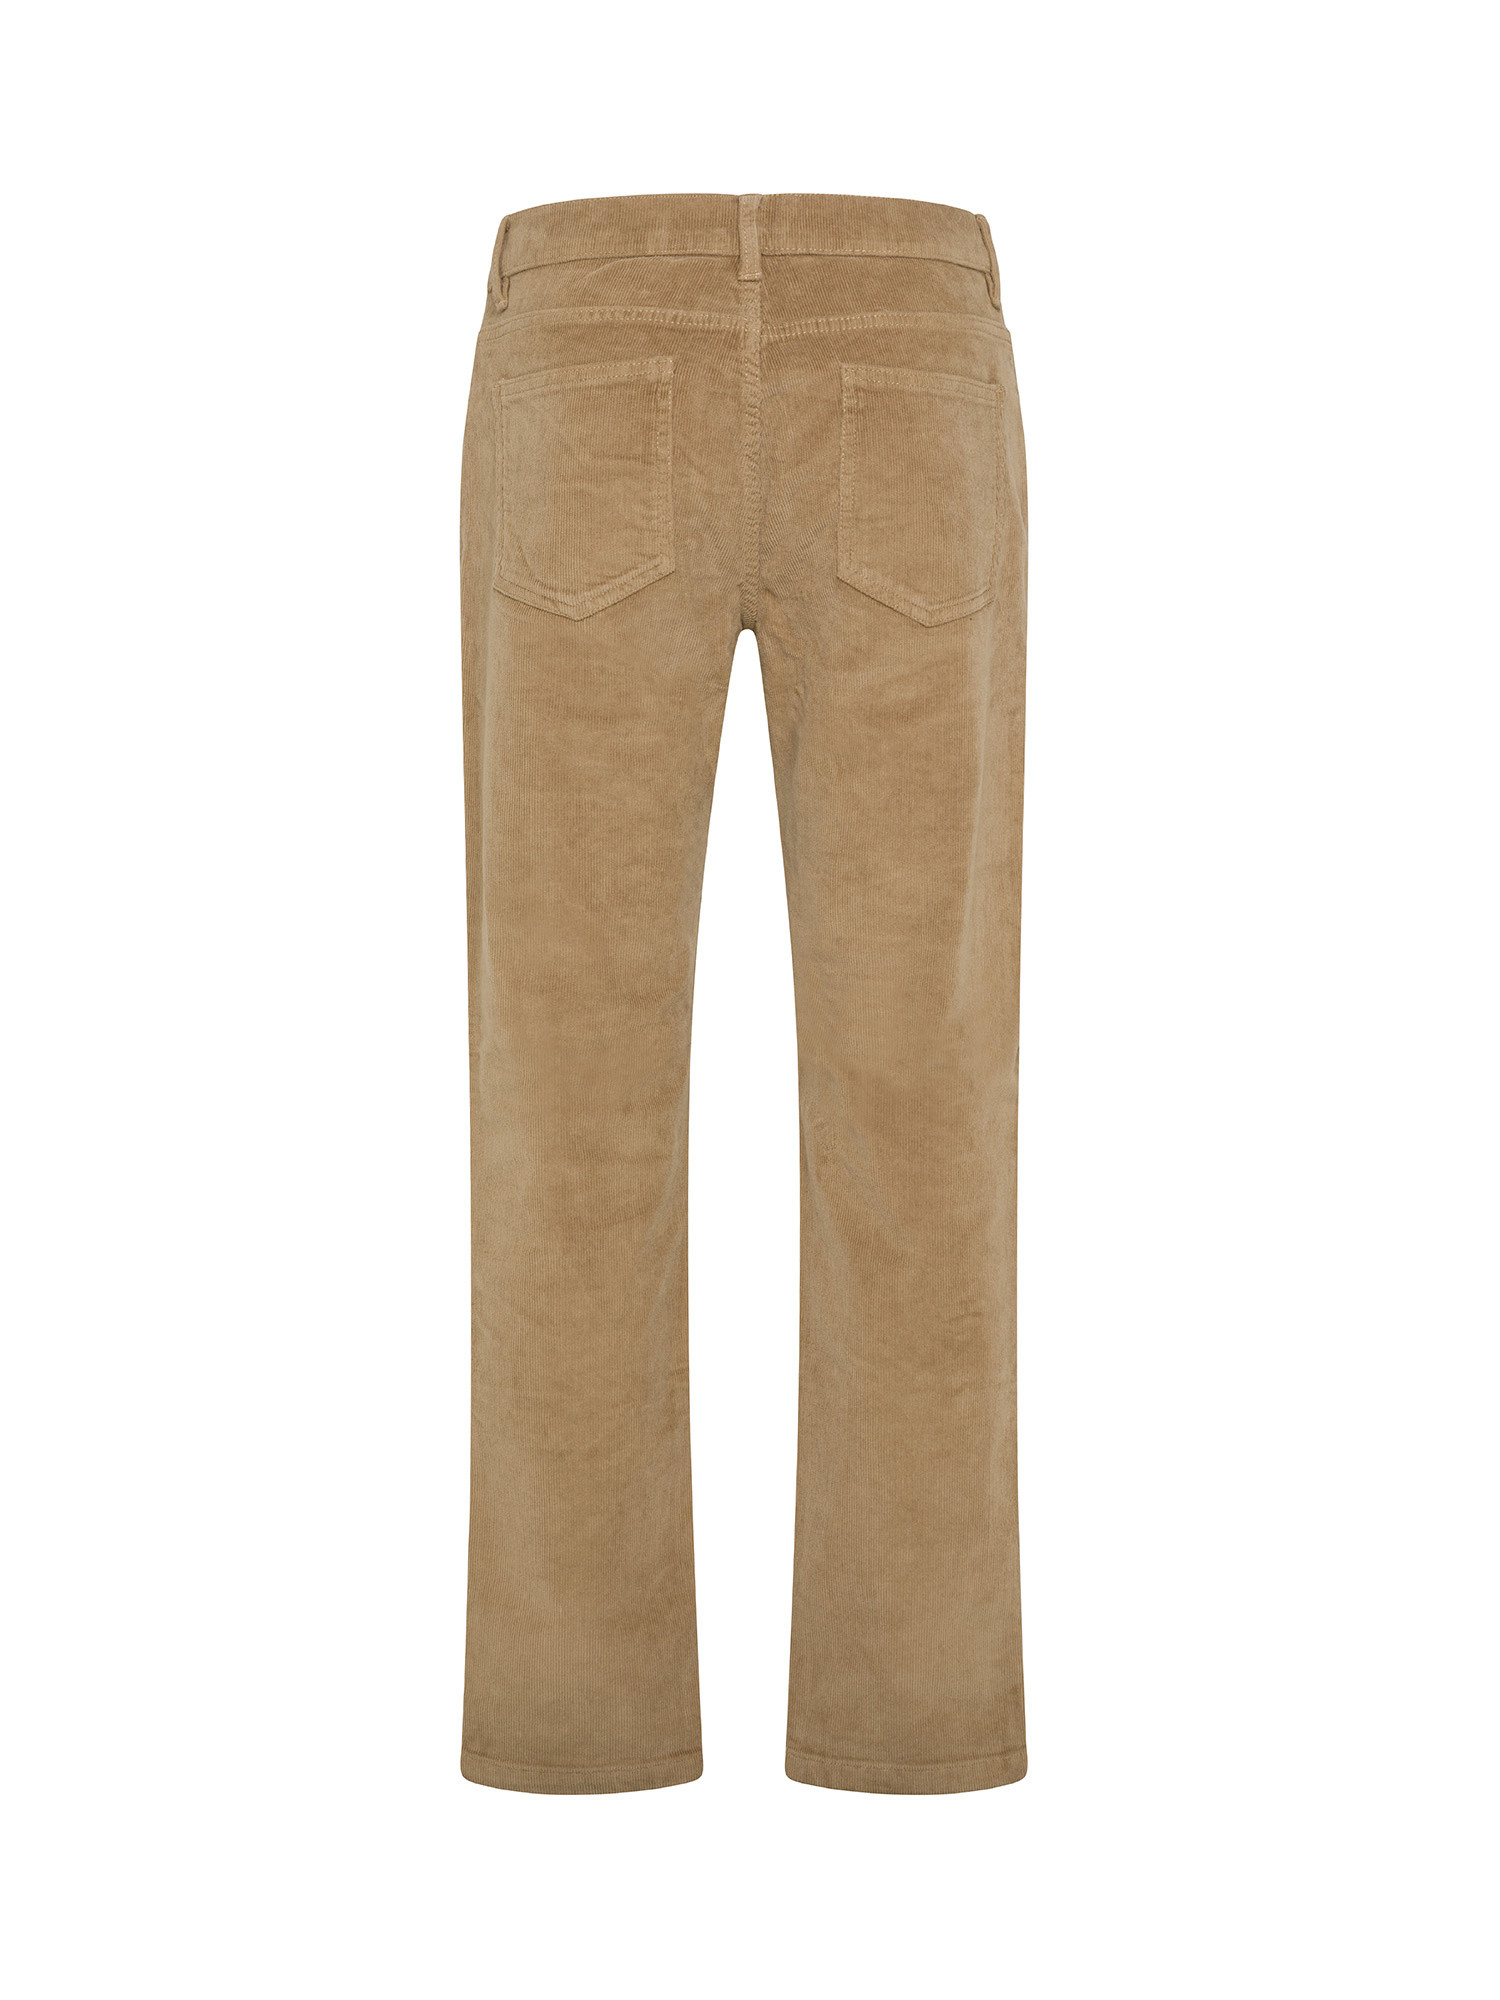 JCT - Slim fit five-pocket velvet trousers, Brown, large image number 1